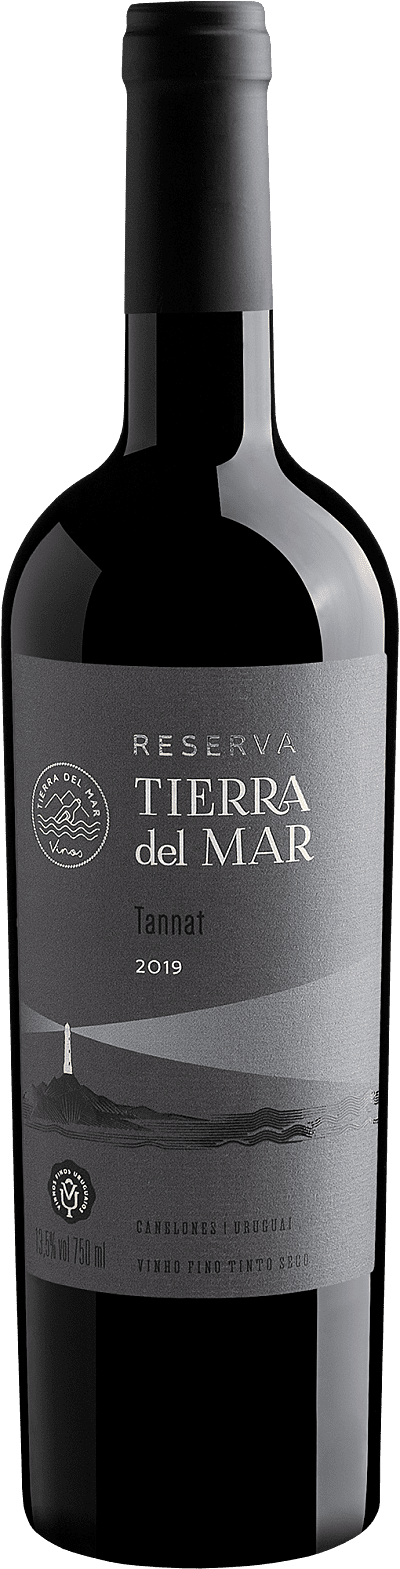 Tierra Del Mar Tannat Reserva 2019 Tannat